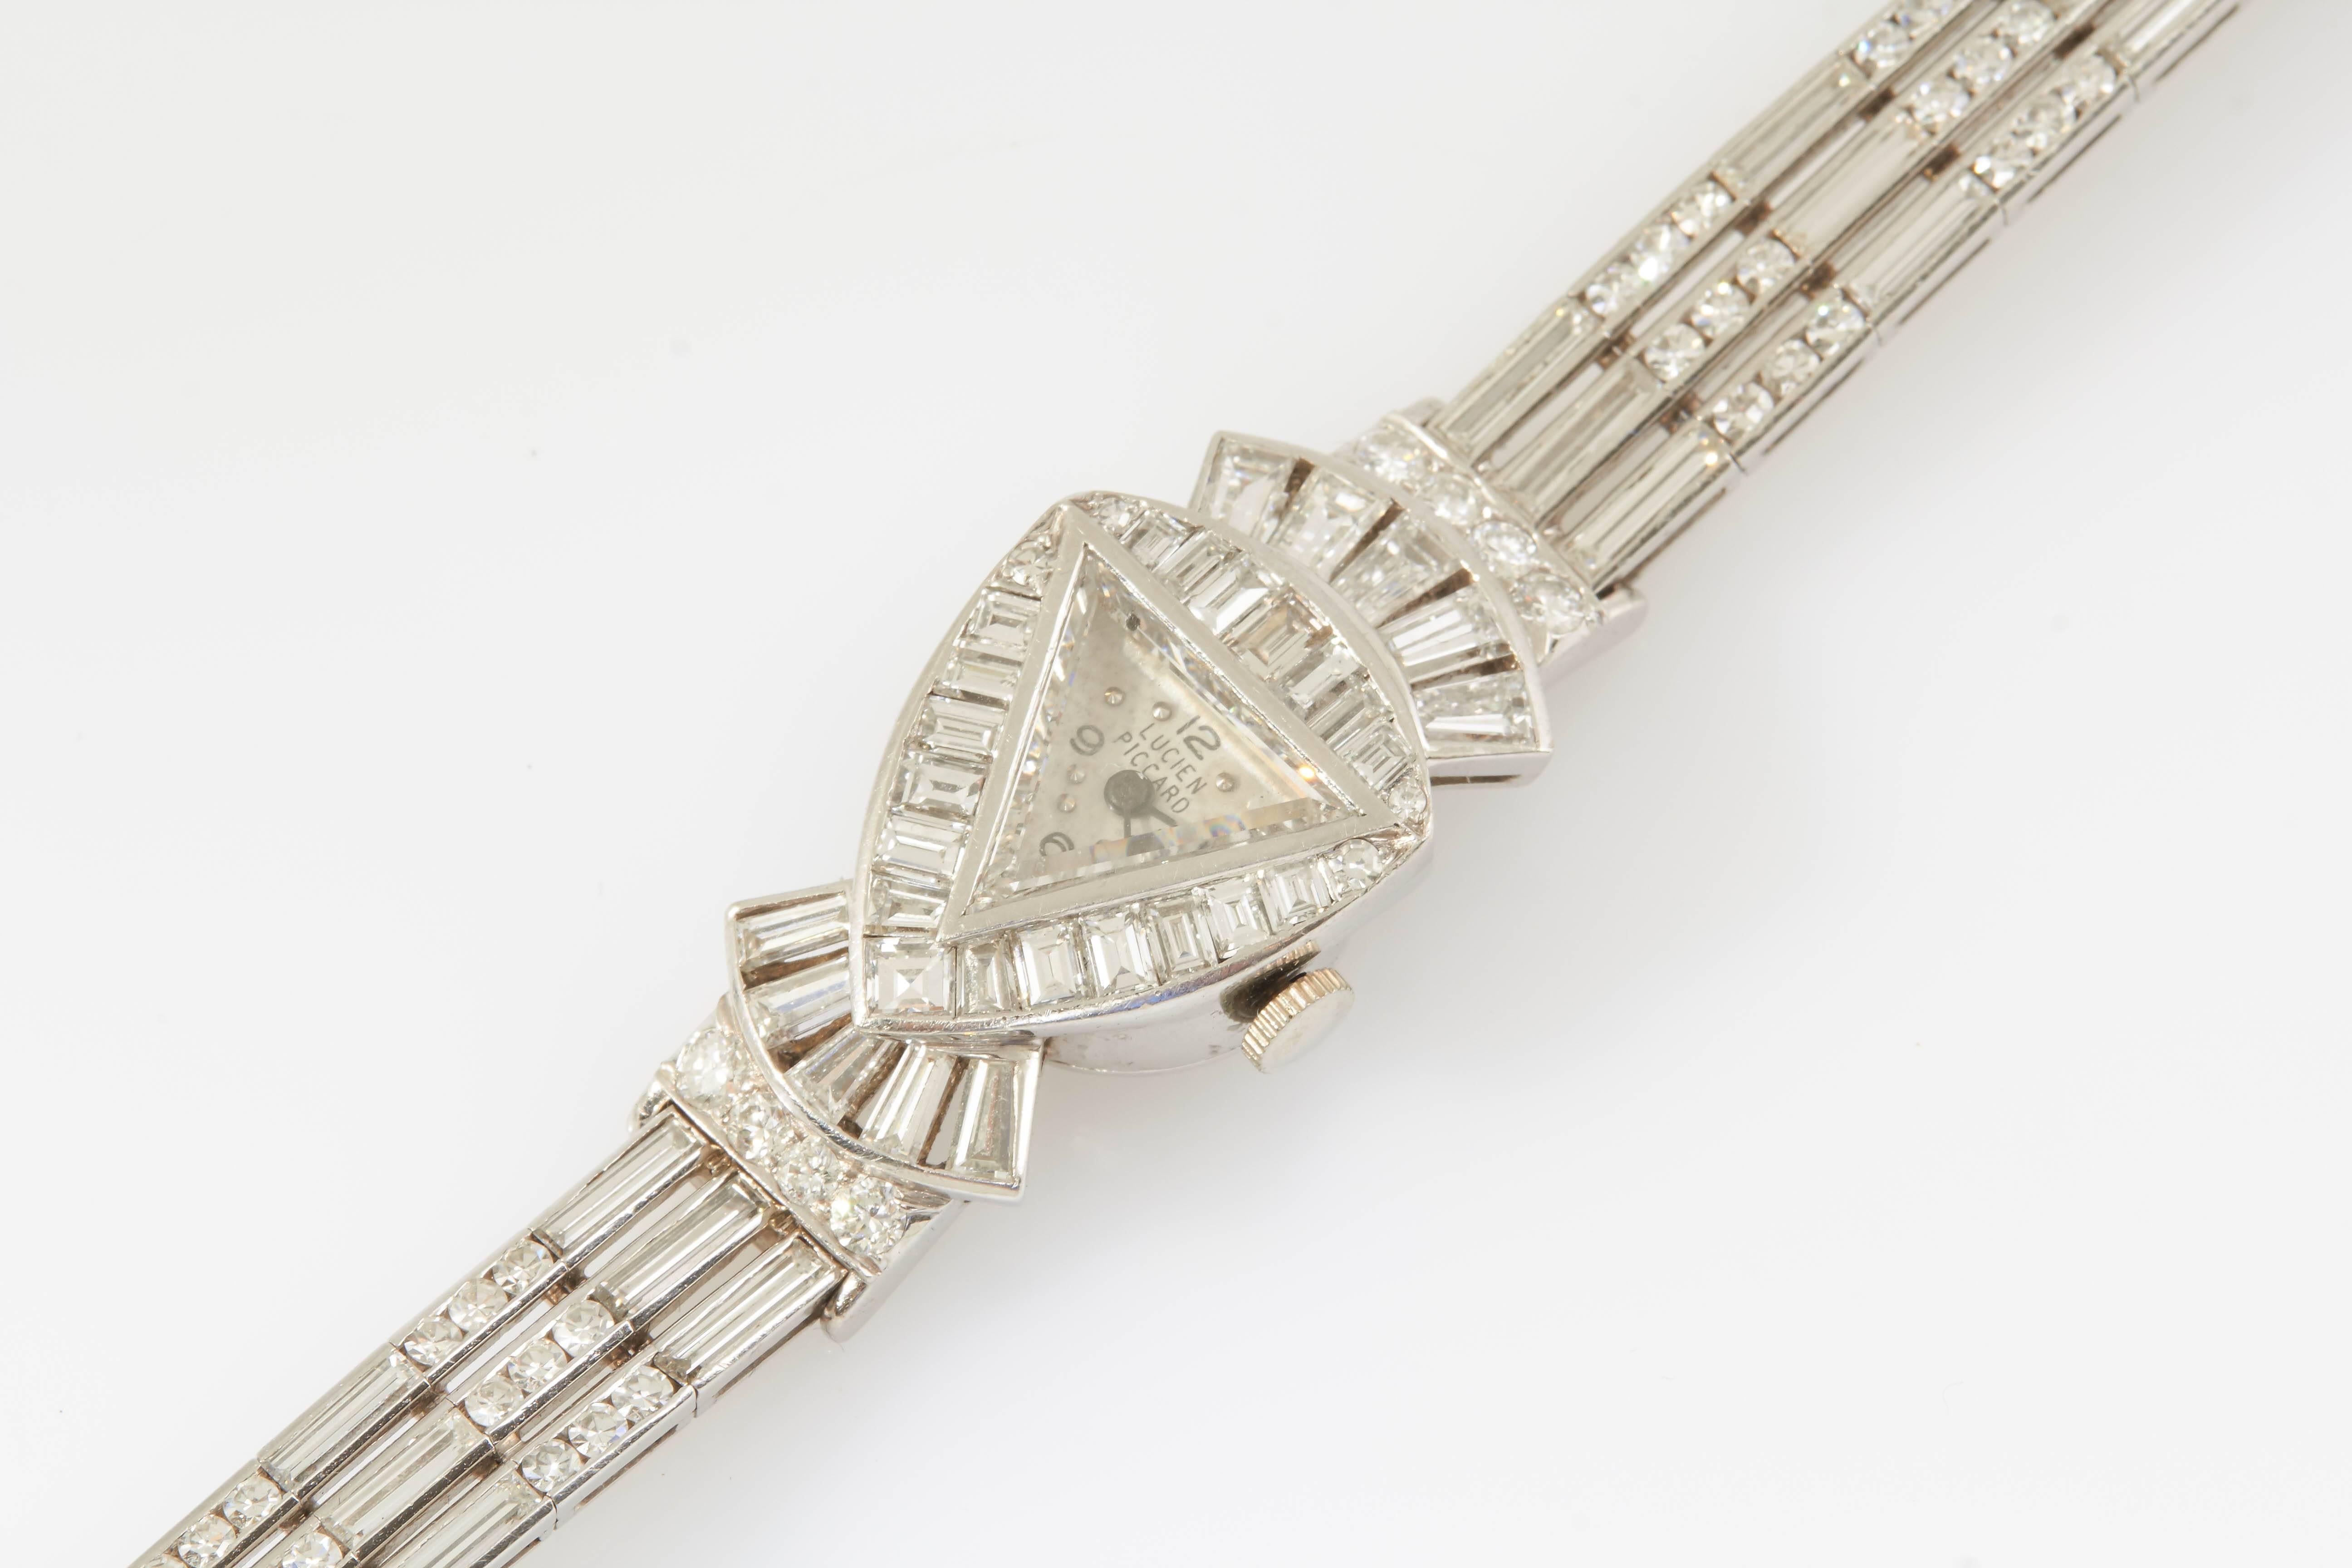 La montre signée Lucien Piccard est composée de diamants de taille baguette et ronde pesant environ 20,50 carats au total. Le cadran est protégé par un verre en diamant de forme triangulaire. 

